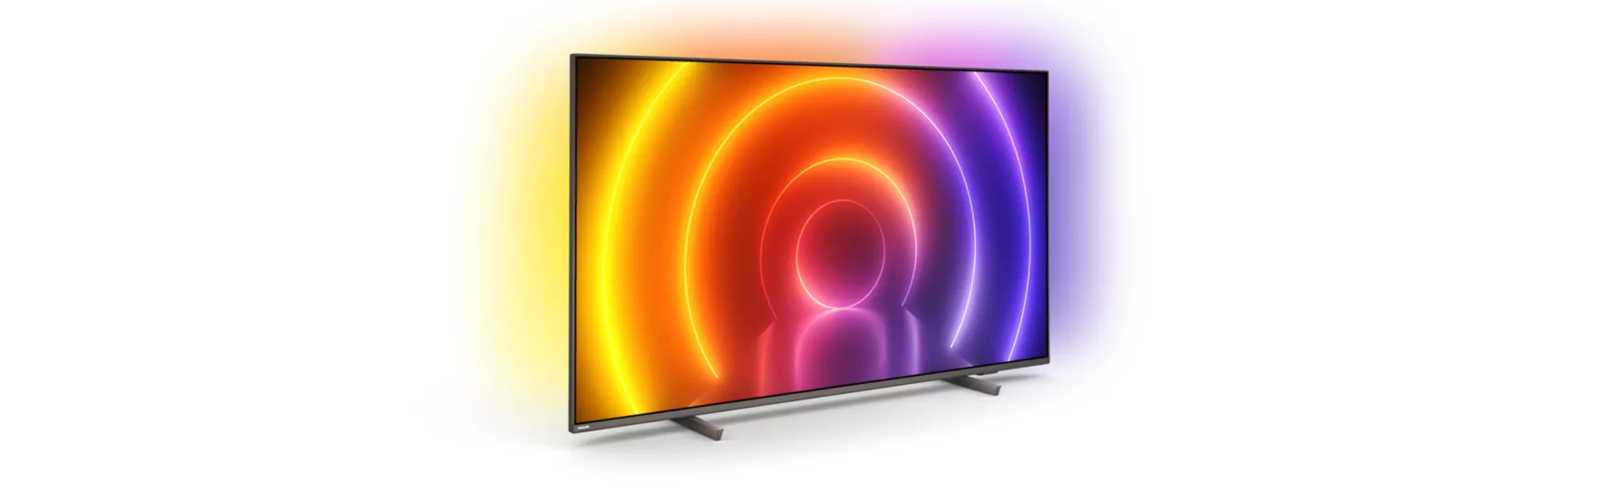 Модельный ряд телевизоров philips 2021 года